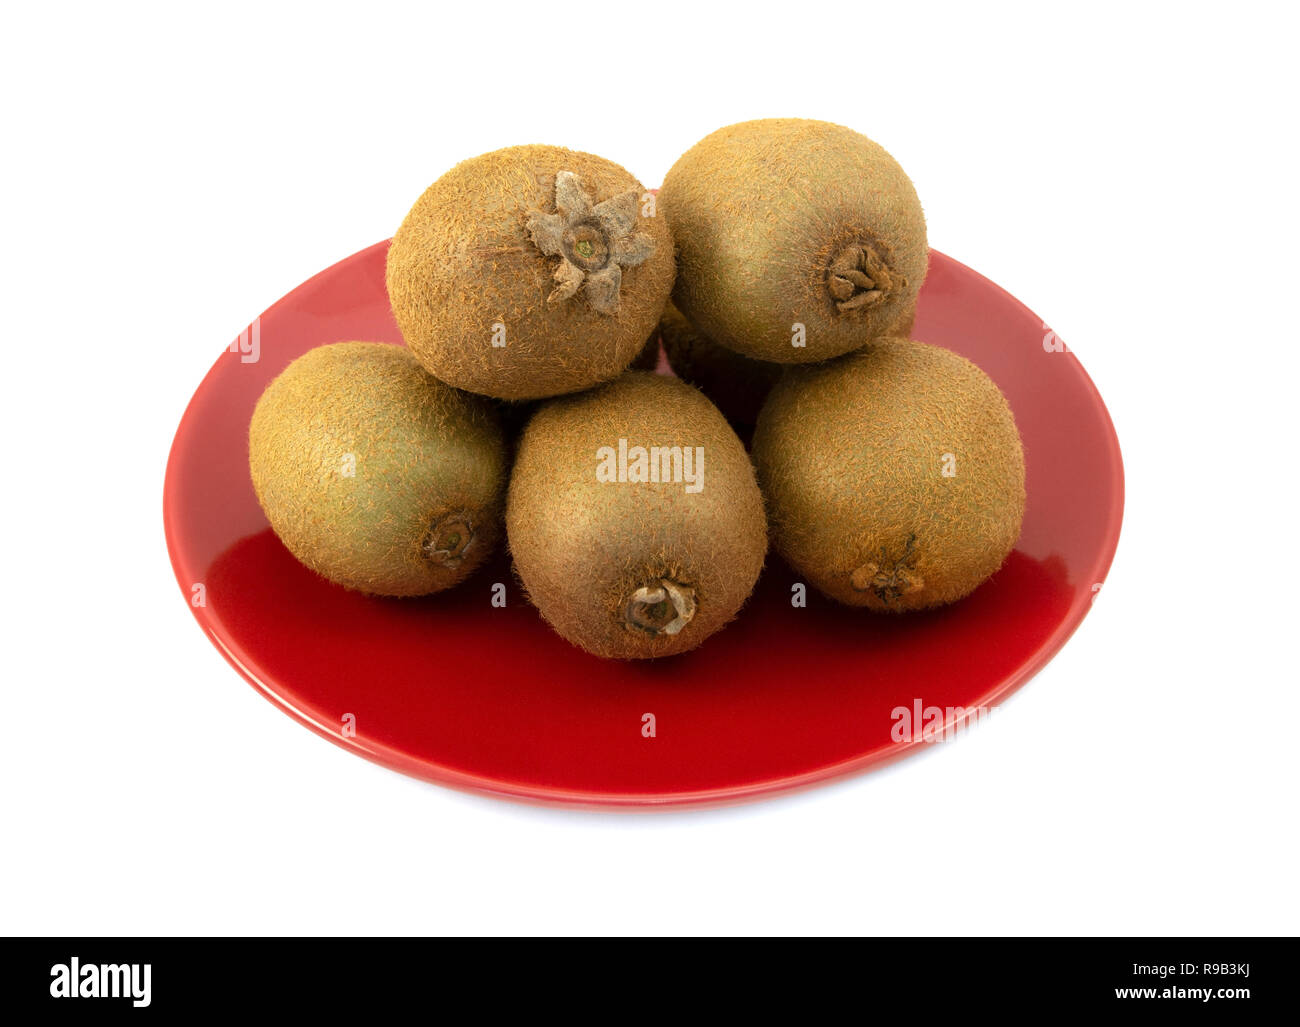 Ensemble avec kiwifruits peaux velues empilés sur une plaque rouge sur un fond blanc. Les sépales, les extrémités de la tige et des fleurs se termine du fruit sont visibles. Banque D'Images